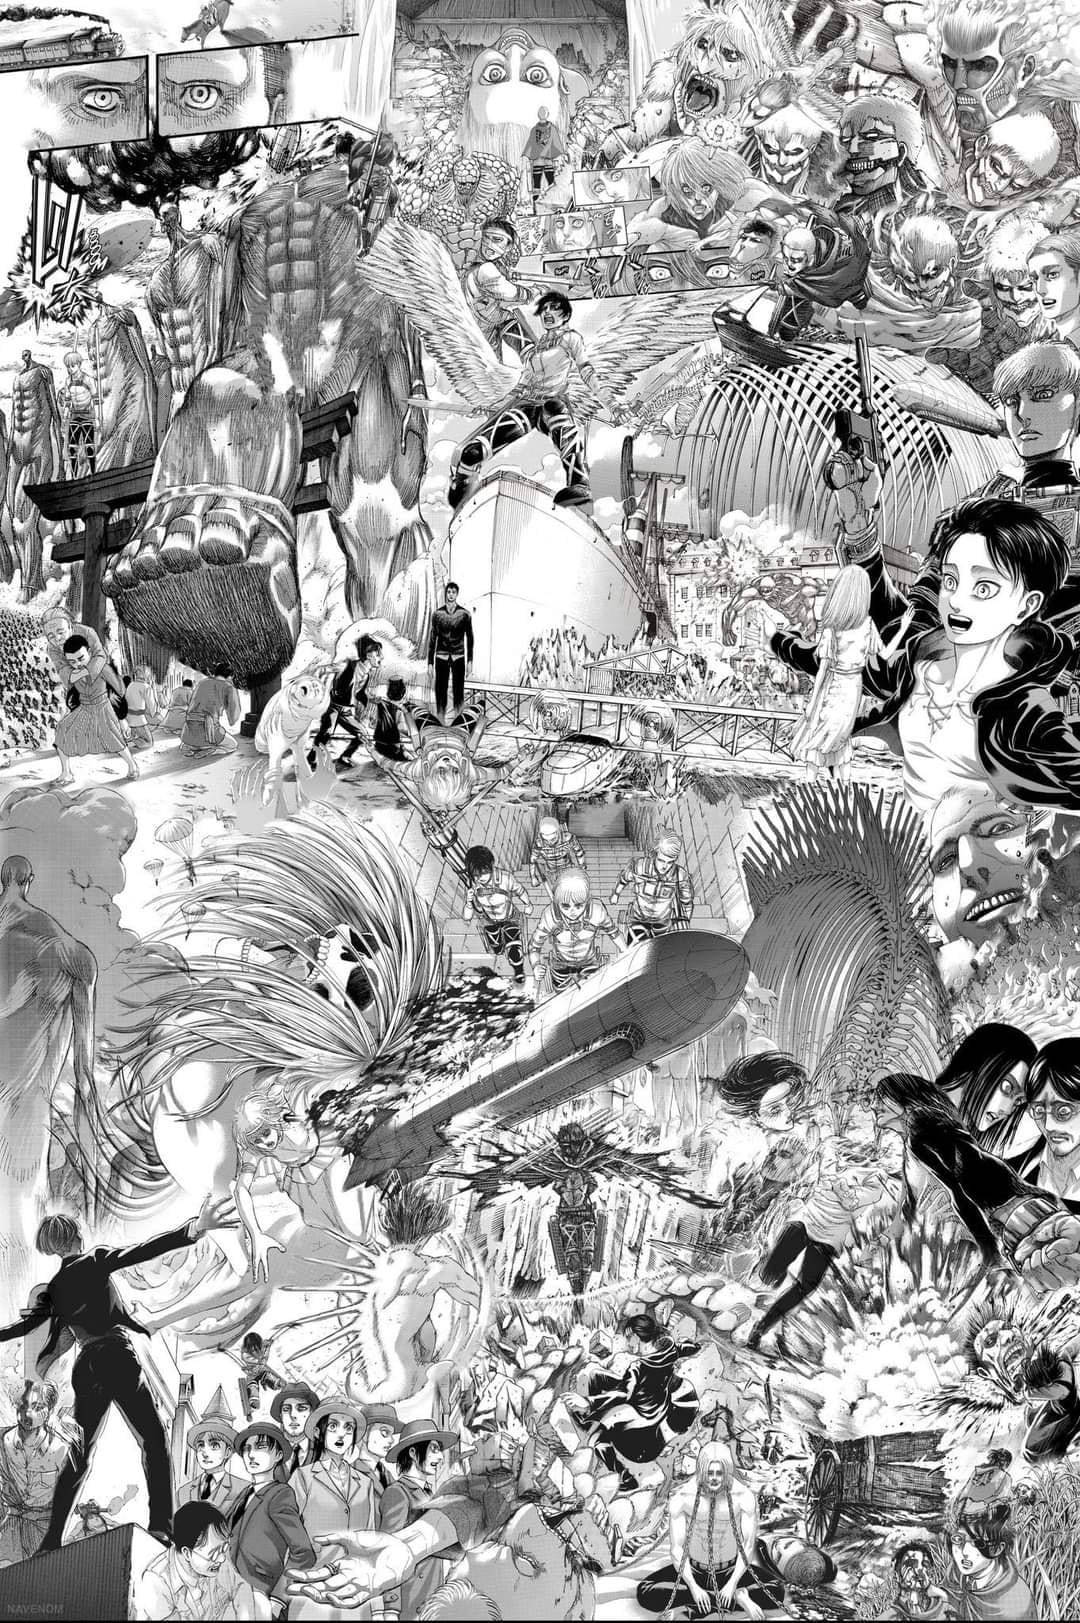 AOT Manga Image Collage Wallpaper